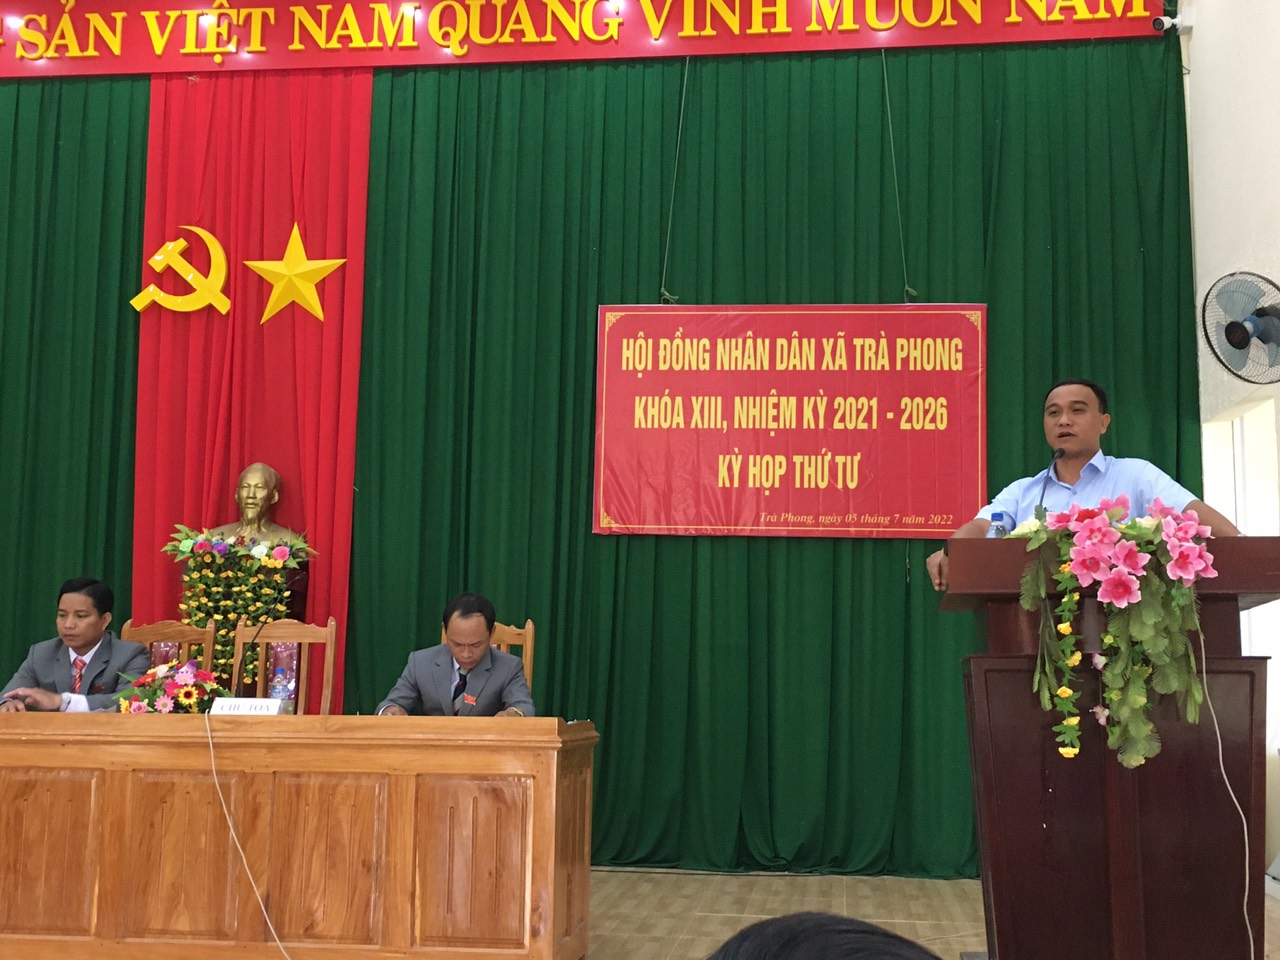 HĐND xã Trà Phong tổ chức kỳ họp thứ tư khoá XIII nhiệm kỳ 2021-2026